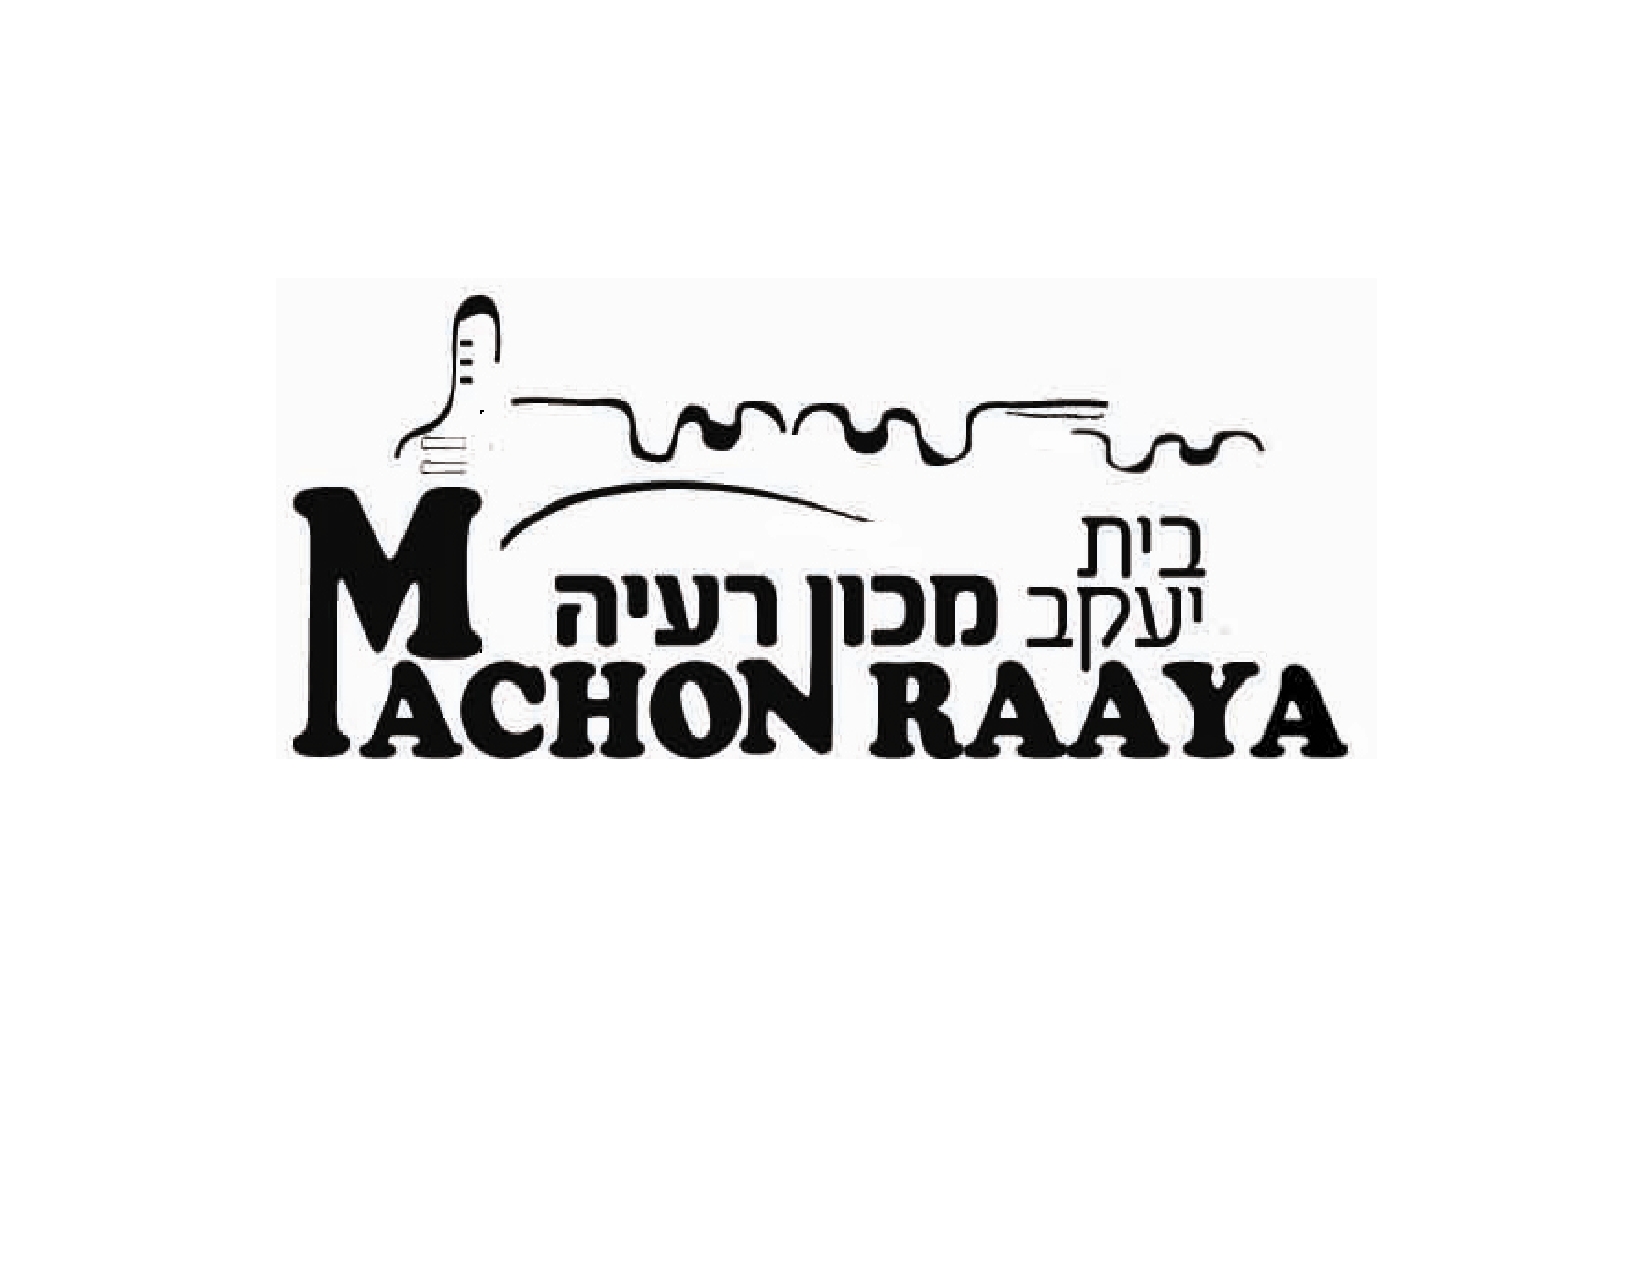 Machon Raaya